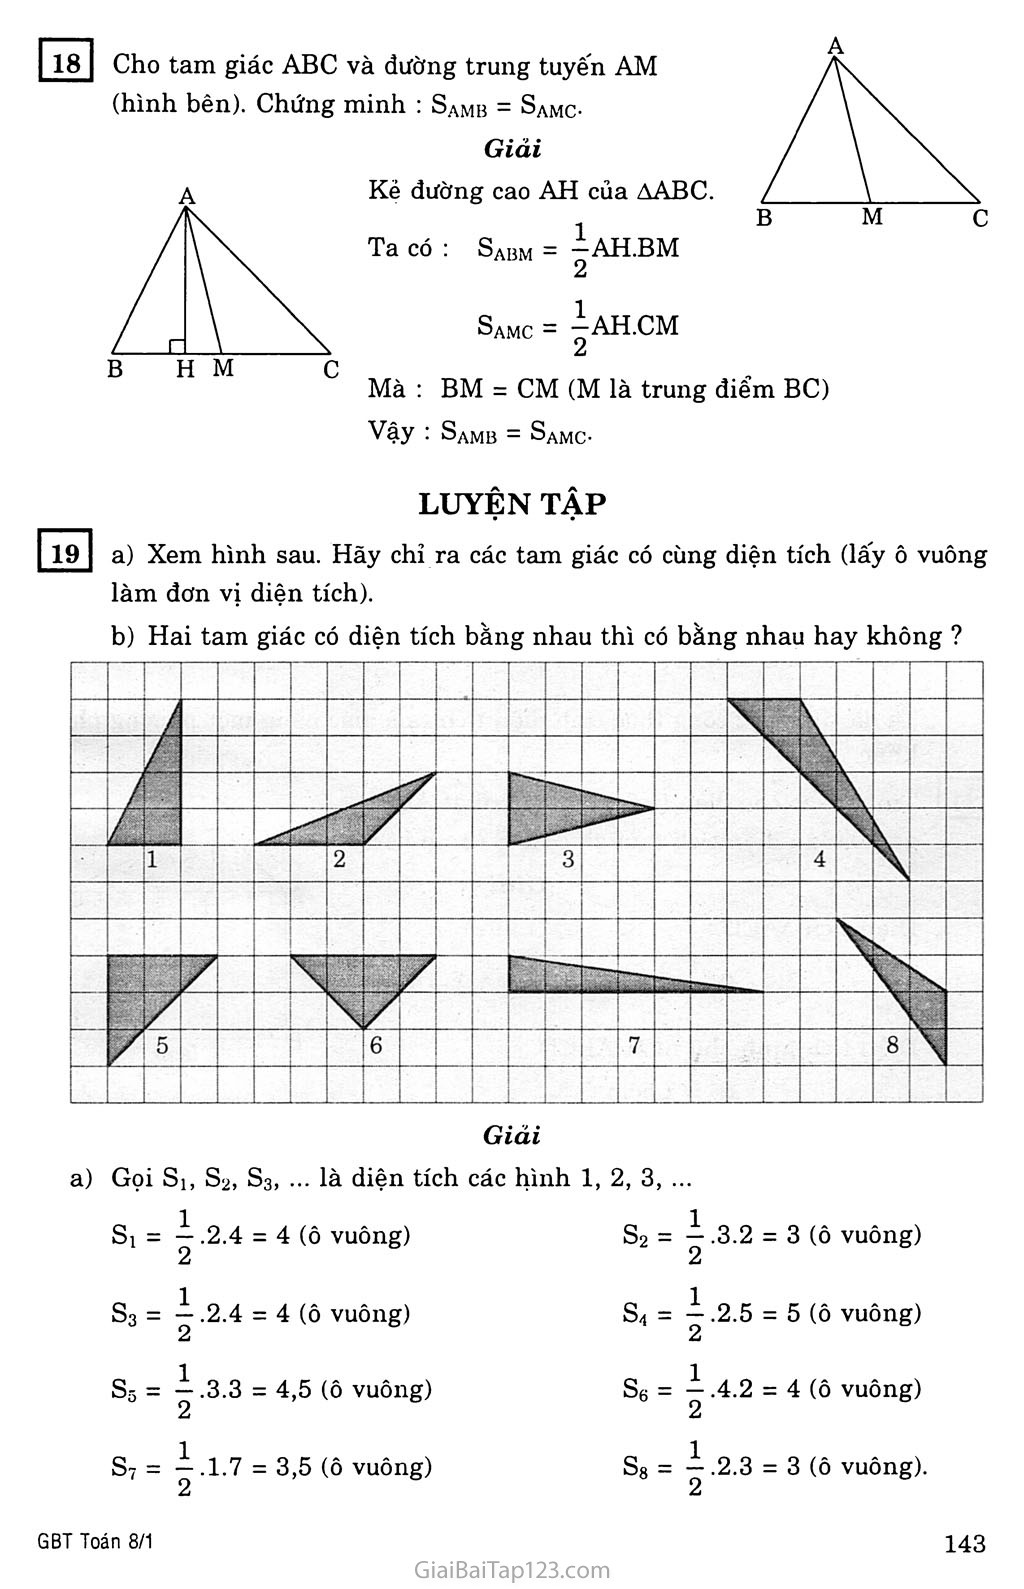 §3. Diện tích tam giác trang 2